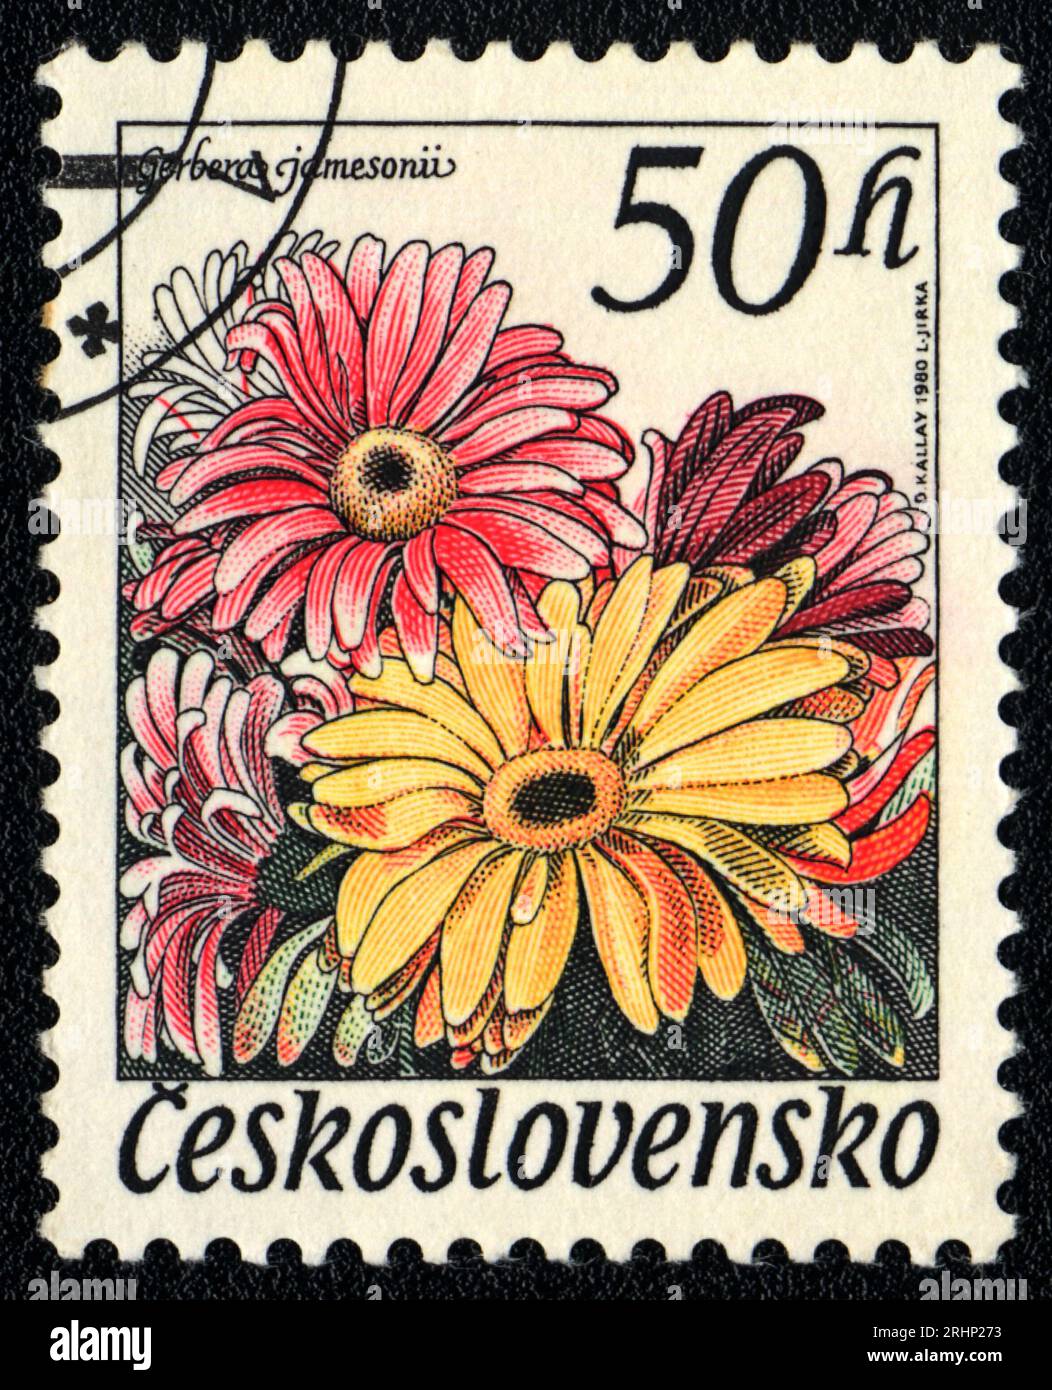 Eine in der Tschechoslowakei gedruckte Briefmarke zeigt Bildblumen von Gerbera jamesonii, Tschechoslowakei 1980 Stockfoto